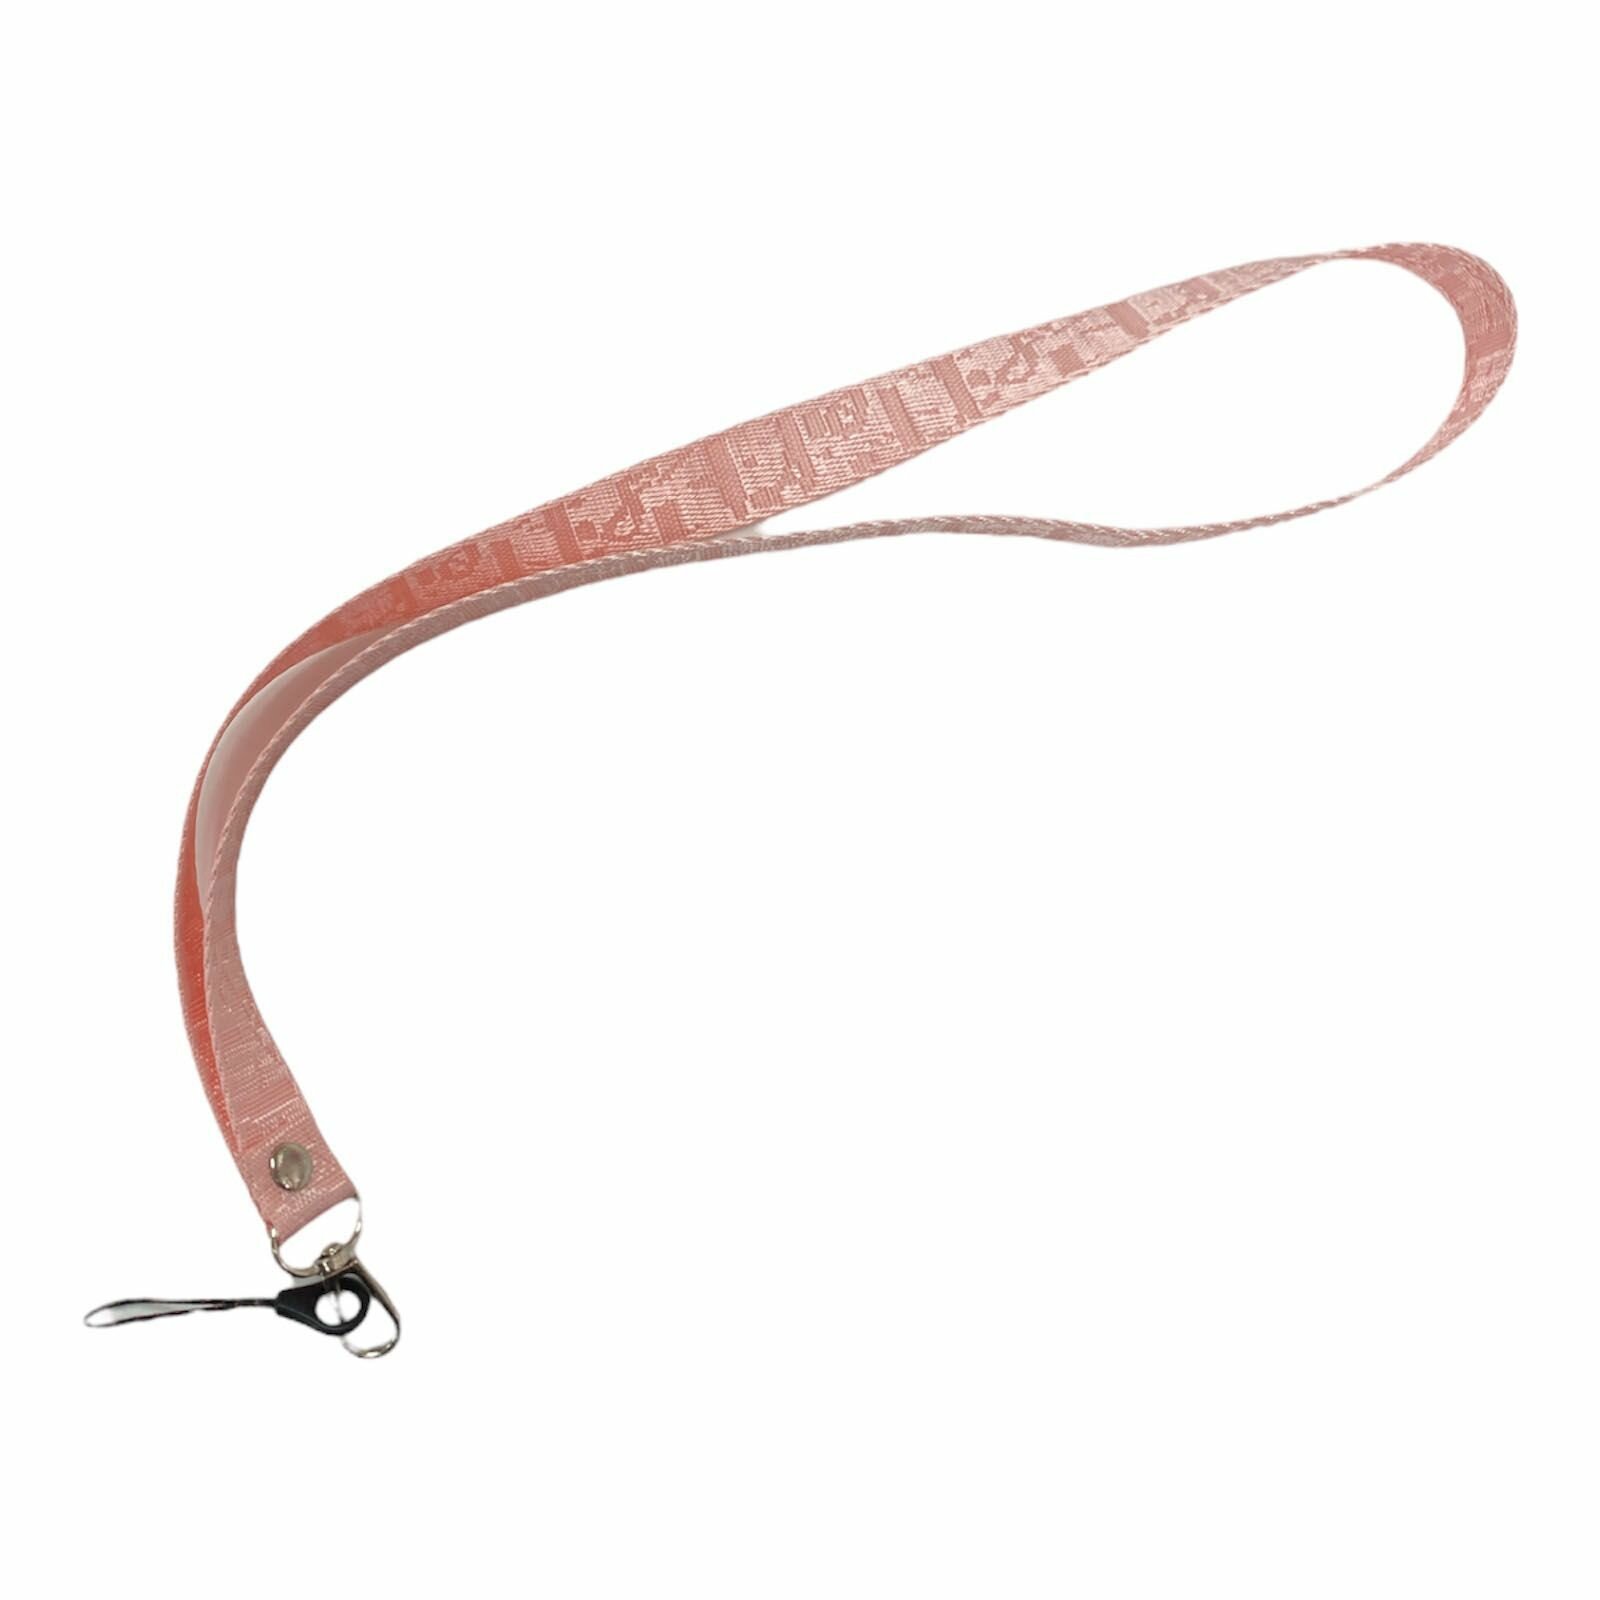 Шнурок для телефона фактурный / Веревка для телефона на шею фактурная / Розовый